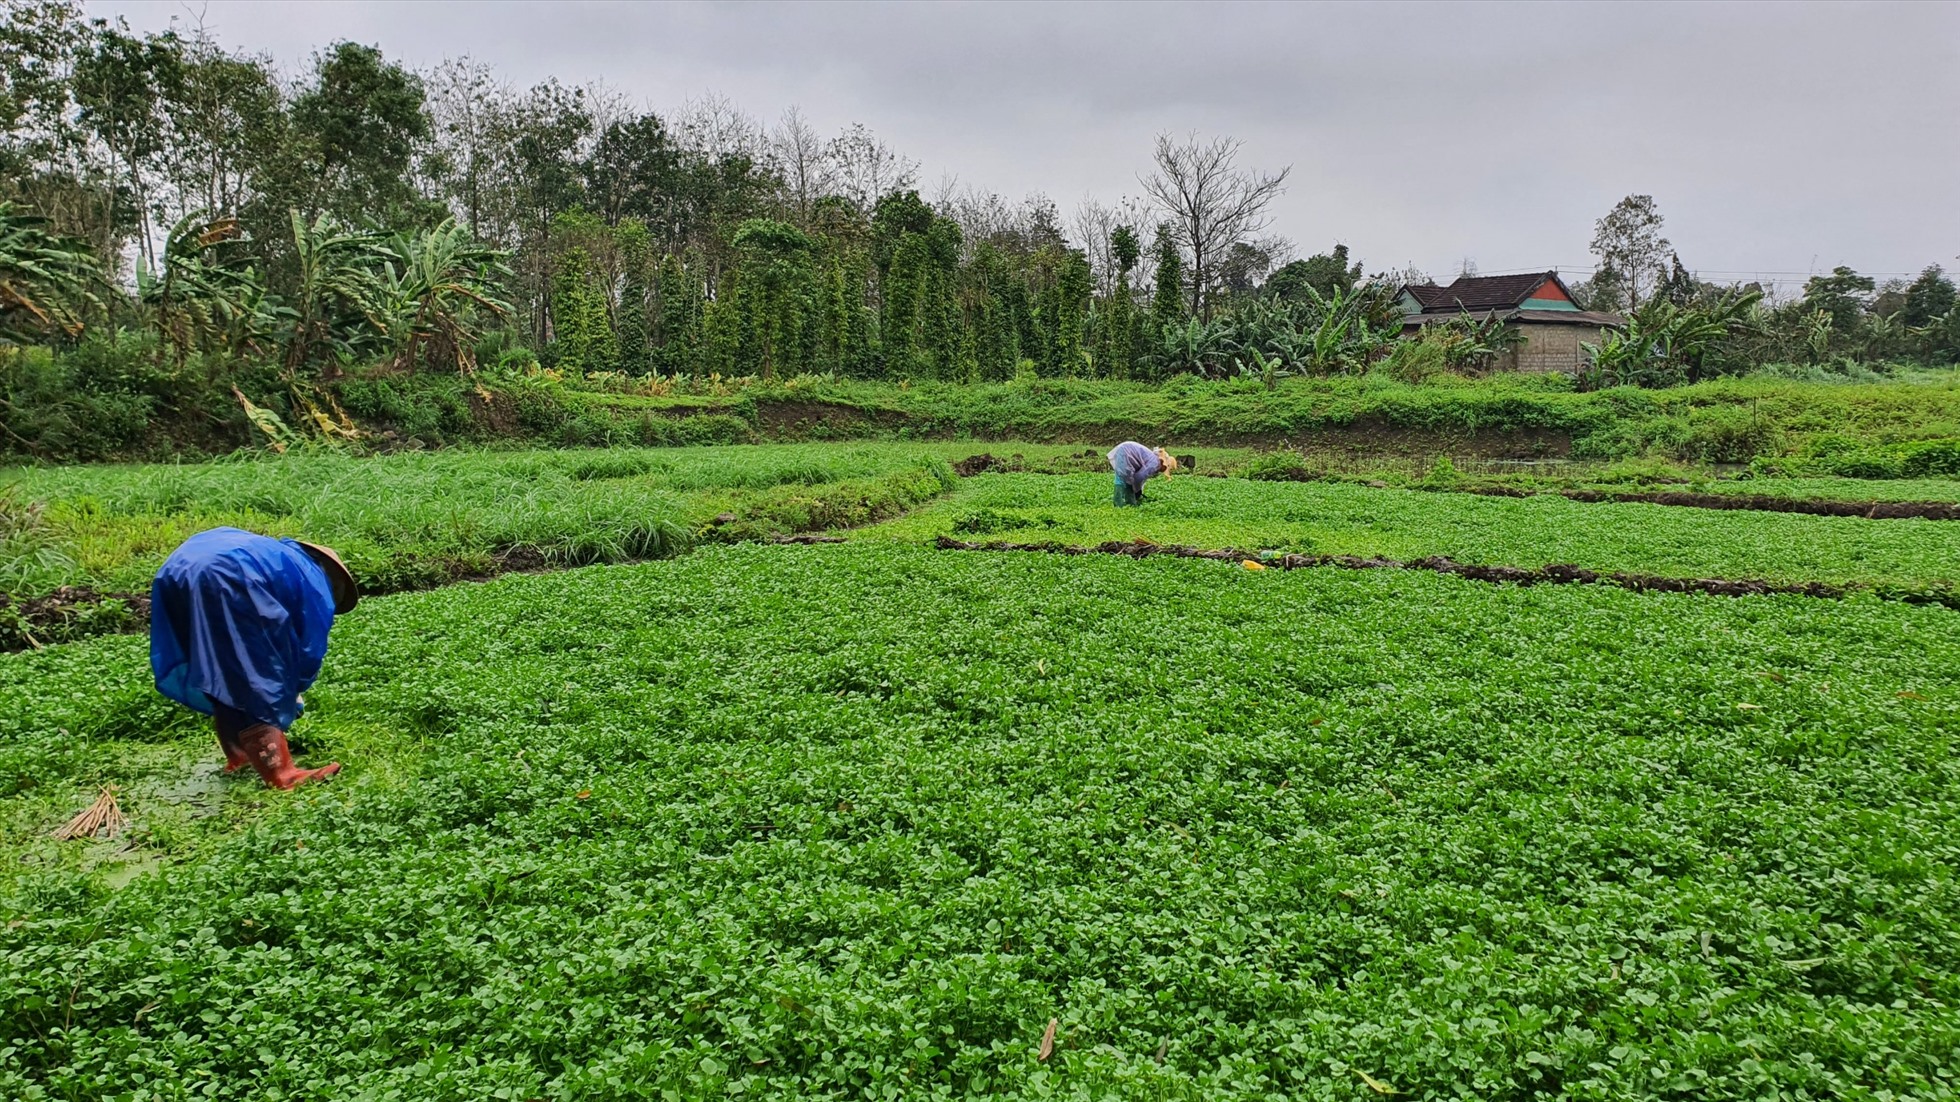 Mới Mùng 3 Tết, thời tiết mưa rét nhưng nhiều người dân đã ra ruộng để thu hoạch rau để cung cấp ra thị trường.